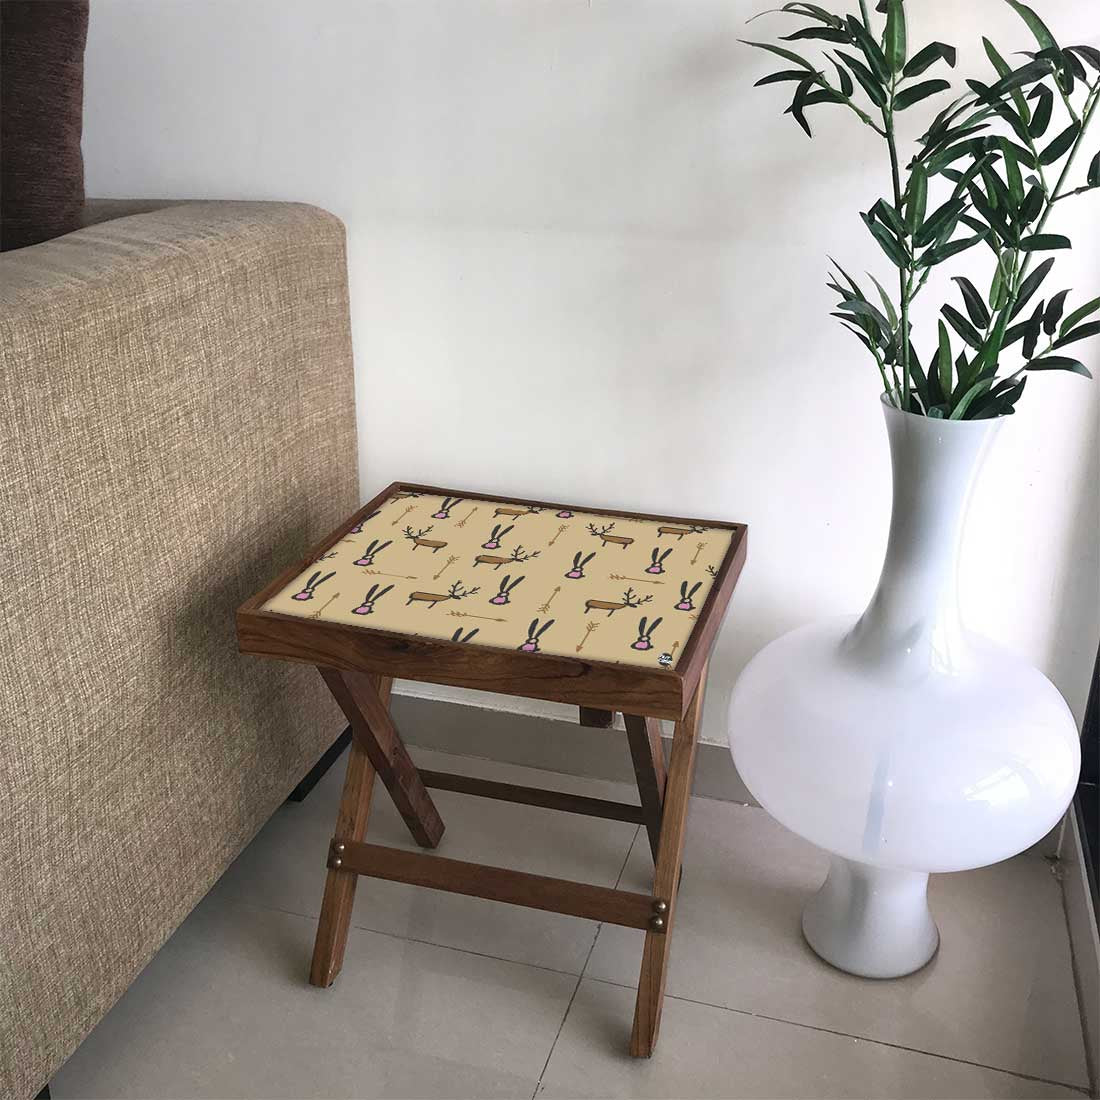 Folding Side Table in Bedroom - Teak Wood -Reindeer